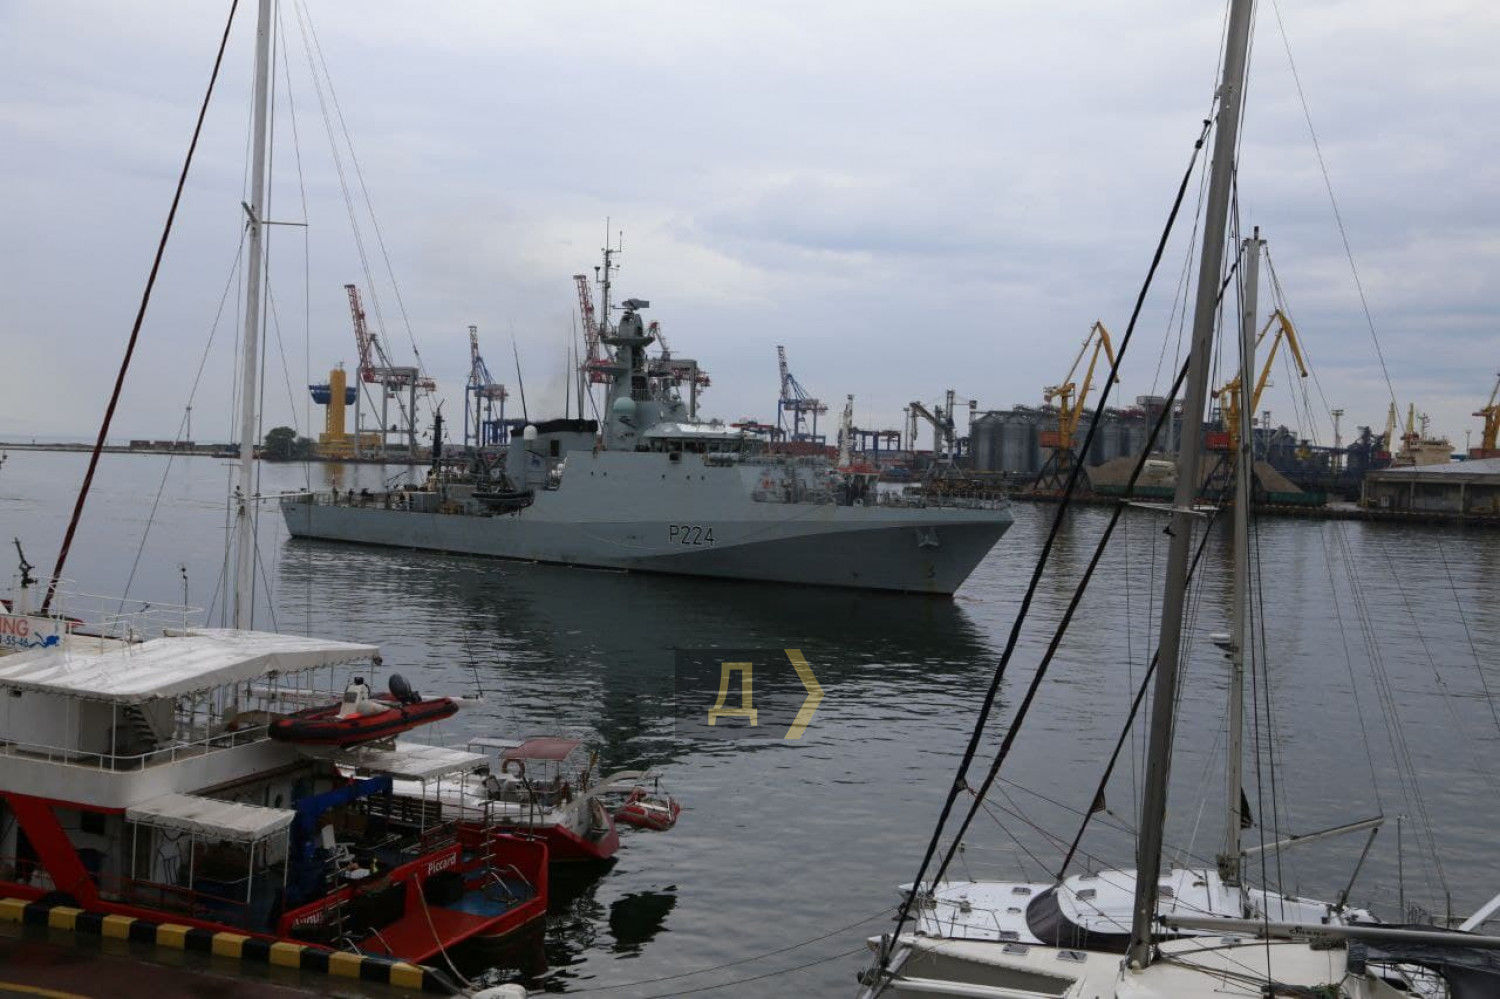 Британский военный корабль HMS Trent P224 вошел в порт Одессы: появились первые фото